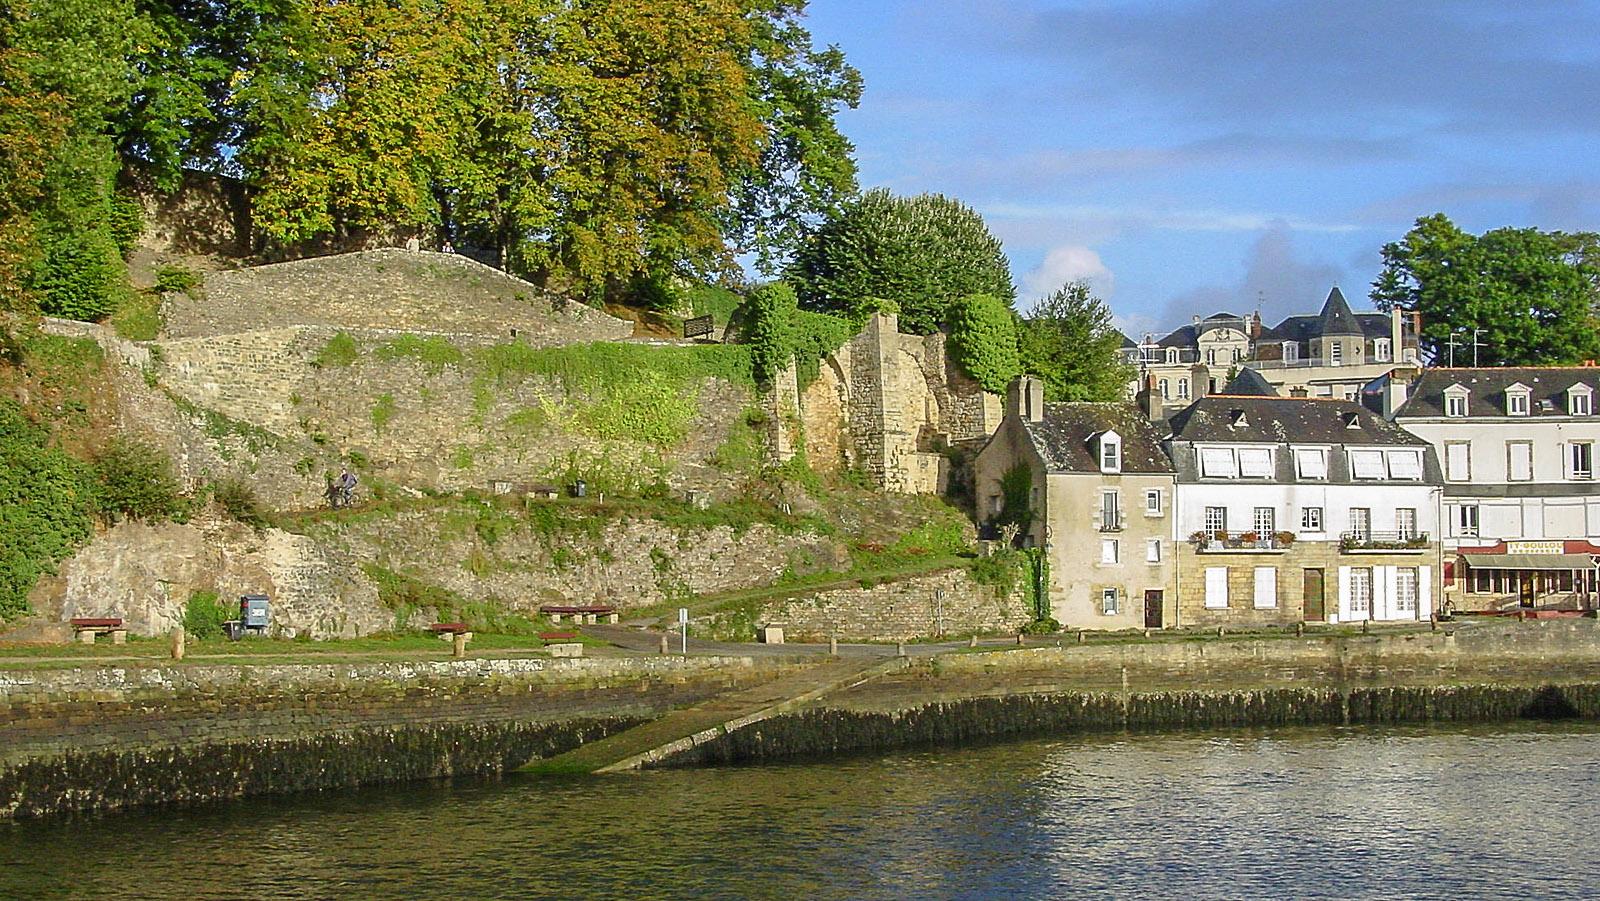 Auray: Blick auf das Stadtviertel und alte Schlossmauern am linken Ufer des Loc'h. Foto: Hilke Maunder